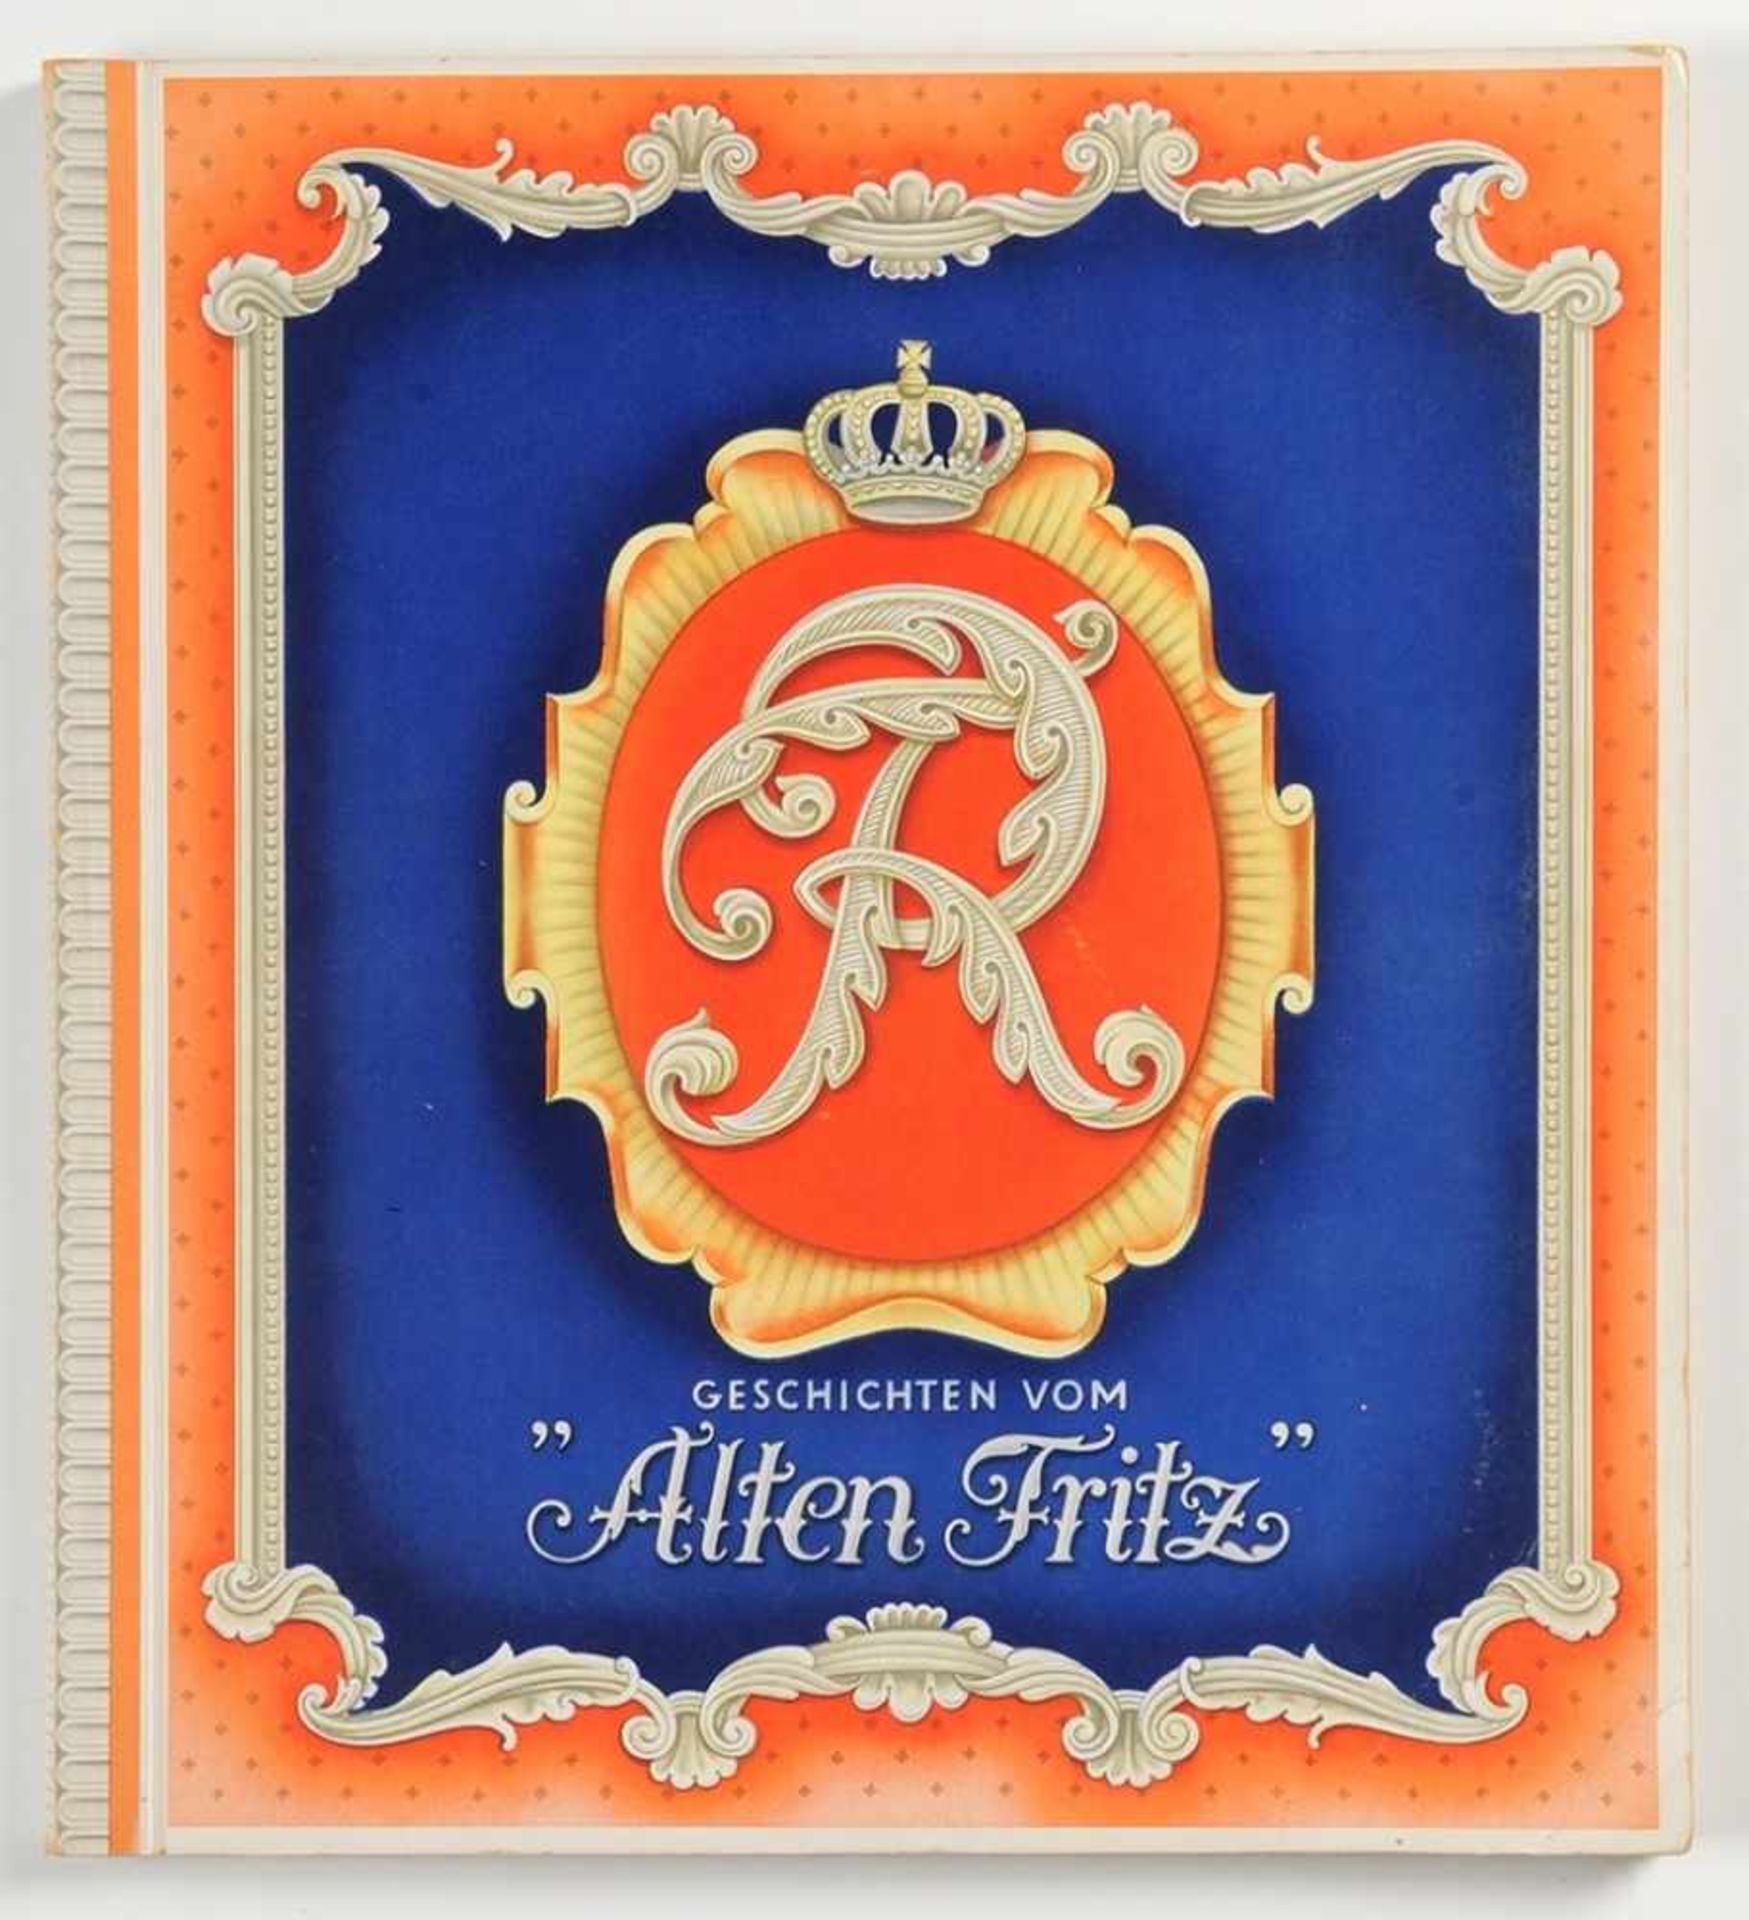 Zigarettenbilderalbum "Geschichten vom Alten Fritz", hrsg. 1935. Vollständig. Ebd. l.